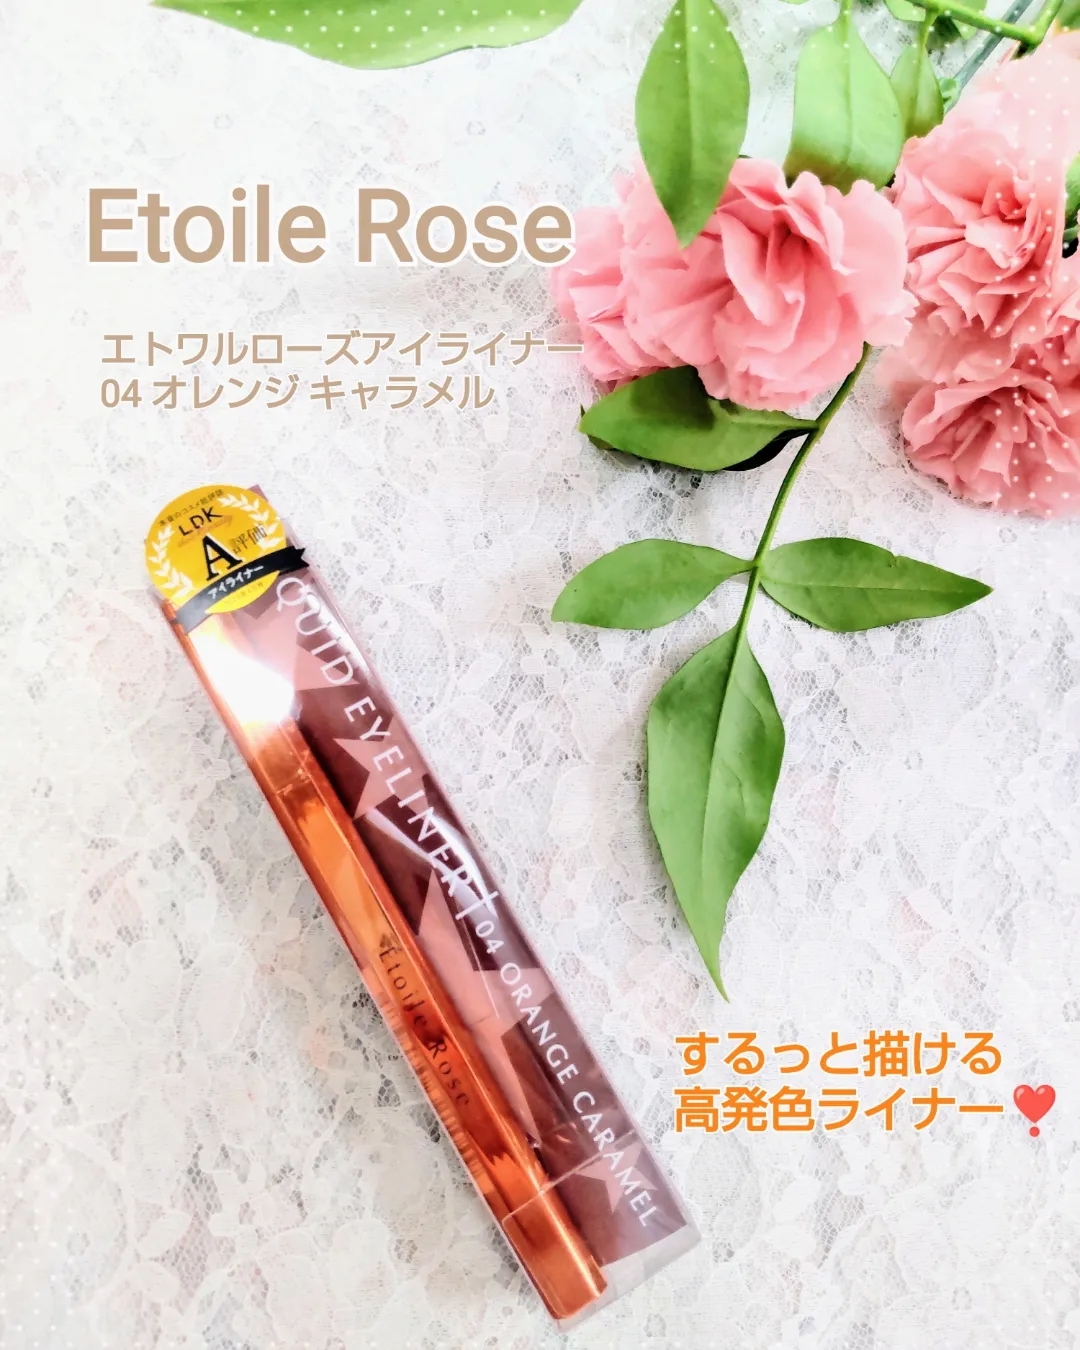 Étoile Rose(エトワルローズ) アイライナーの良い点・メリットに関するティンカーベル0908さんの口コミ画像1